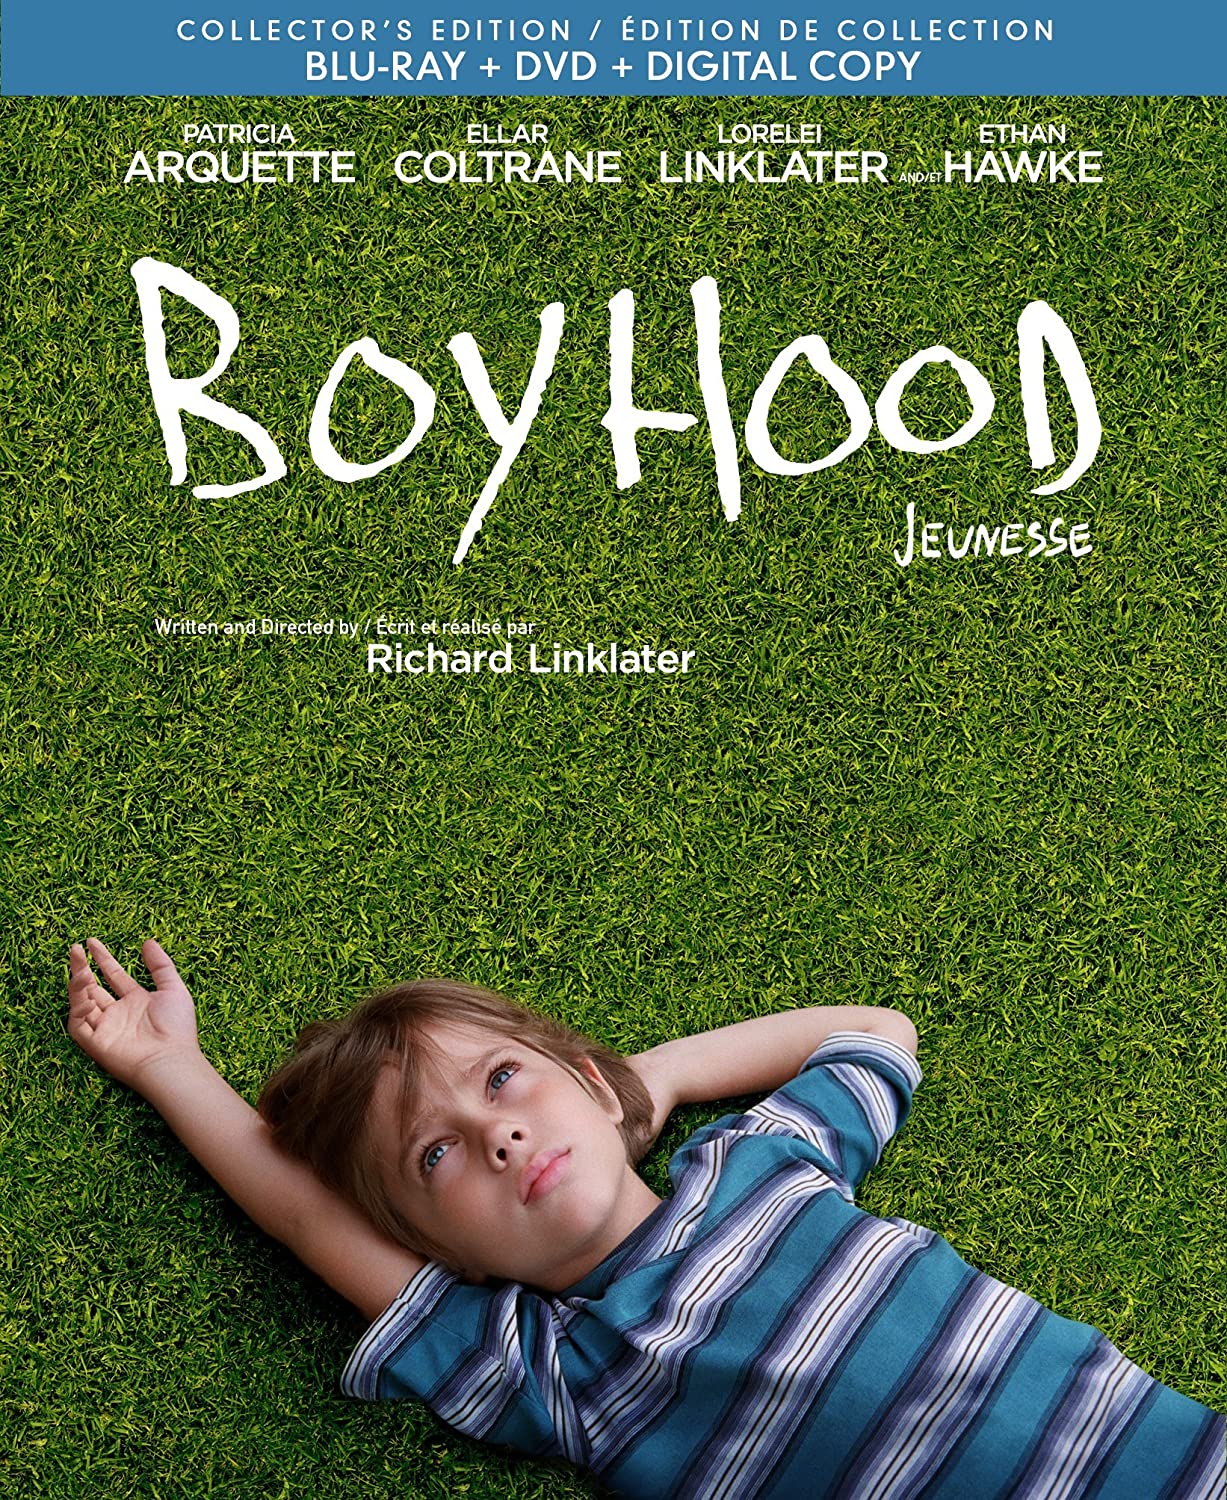 Boyhood [Blu-ray + DVD + Digital Copy] (Bilingual)